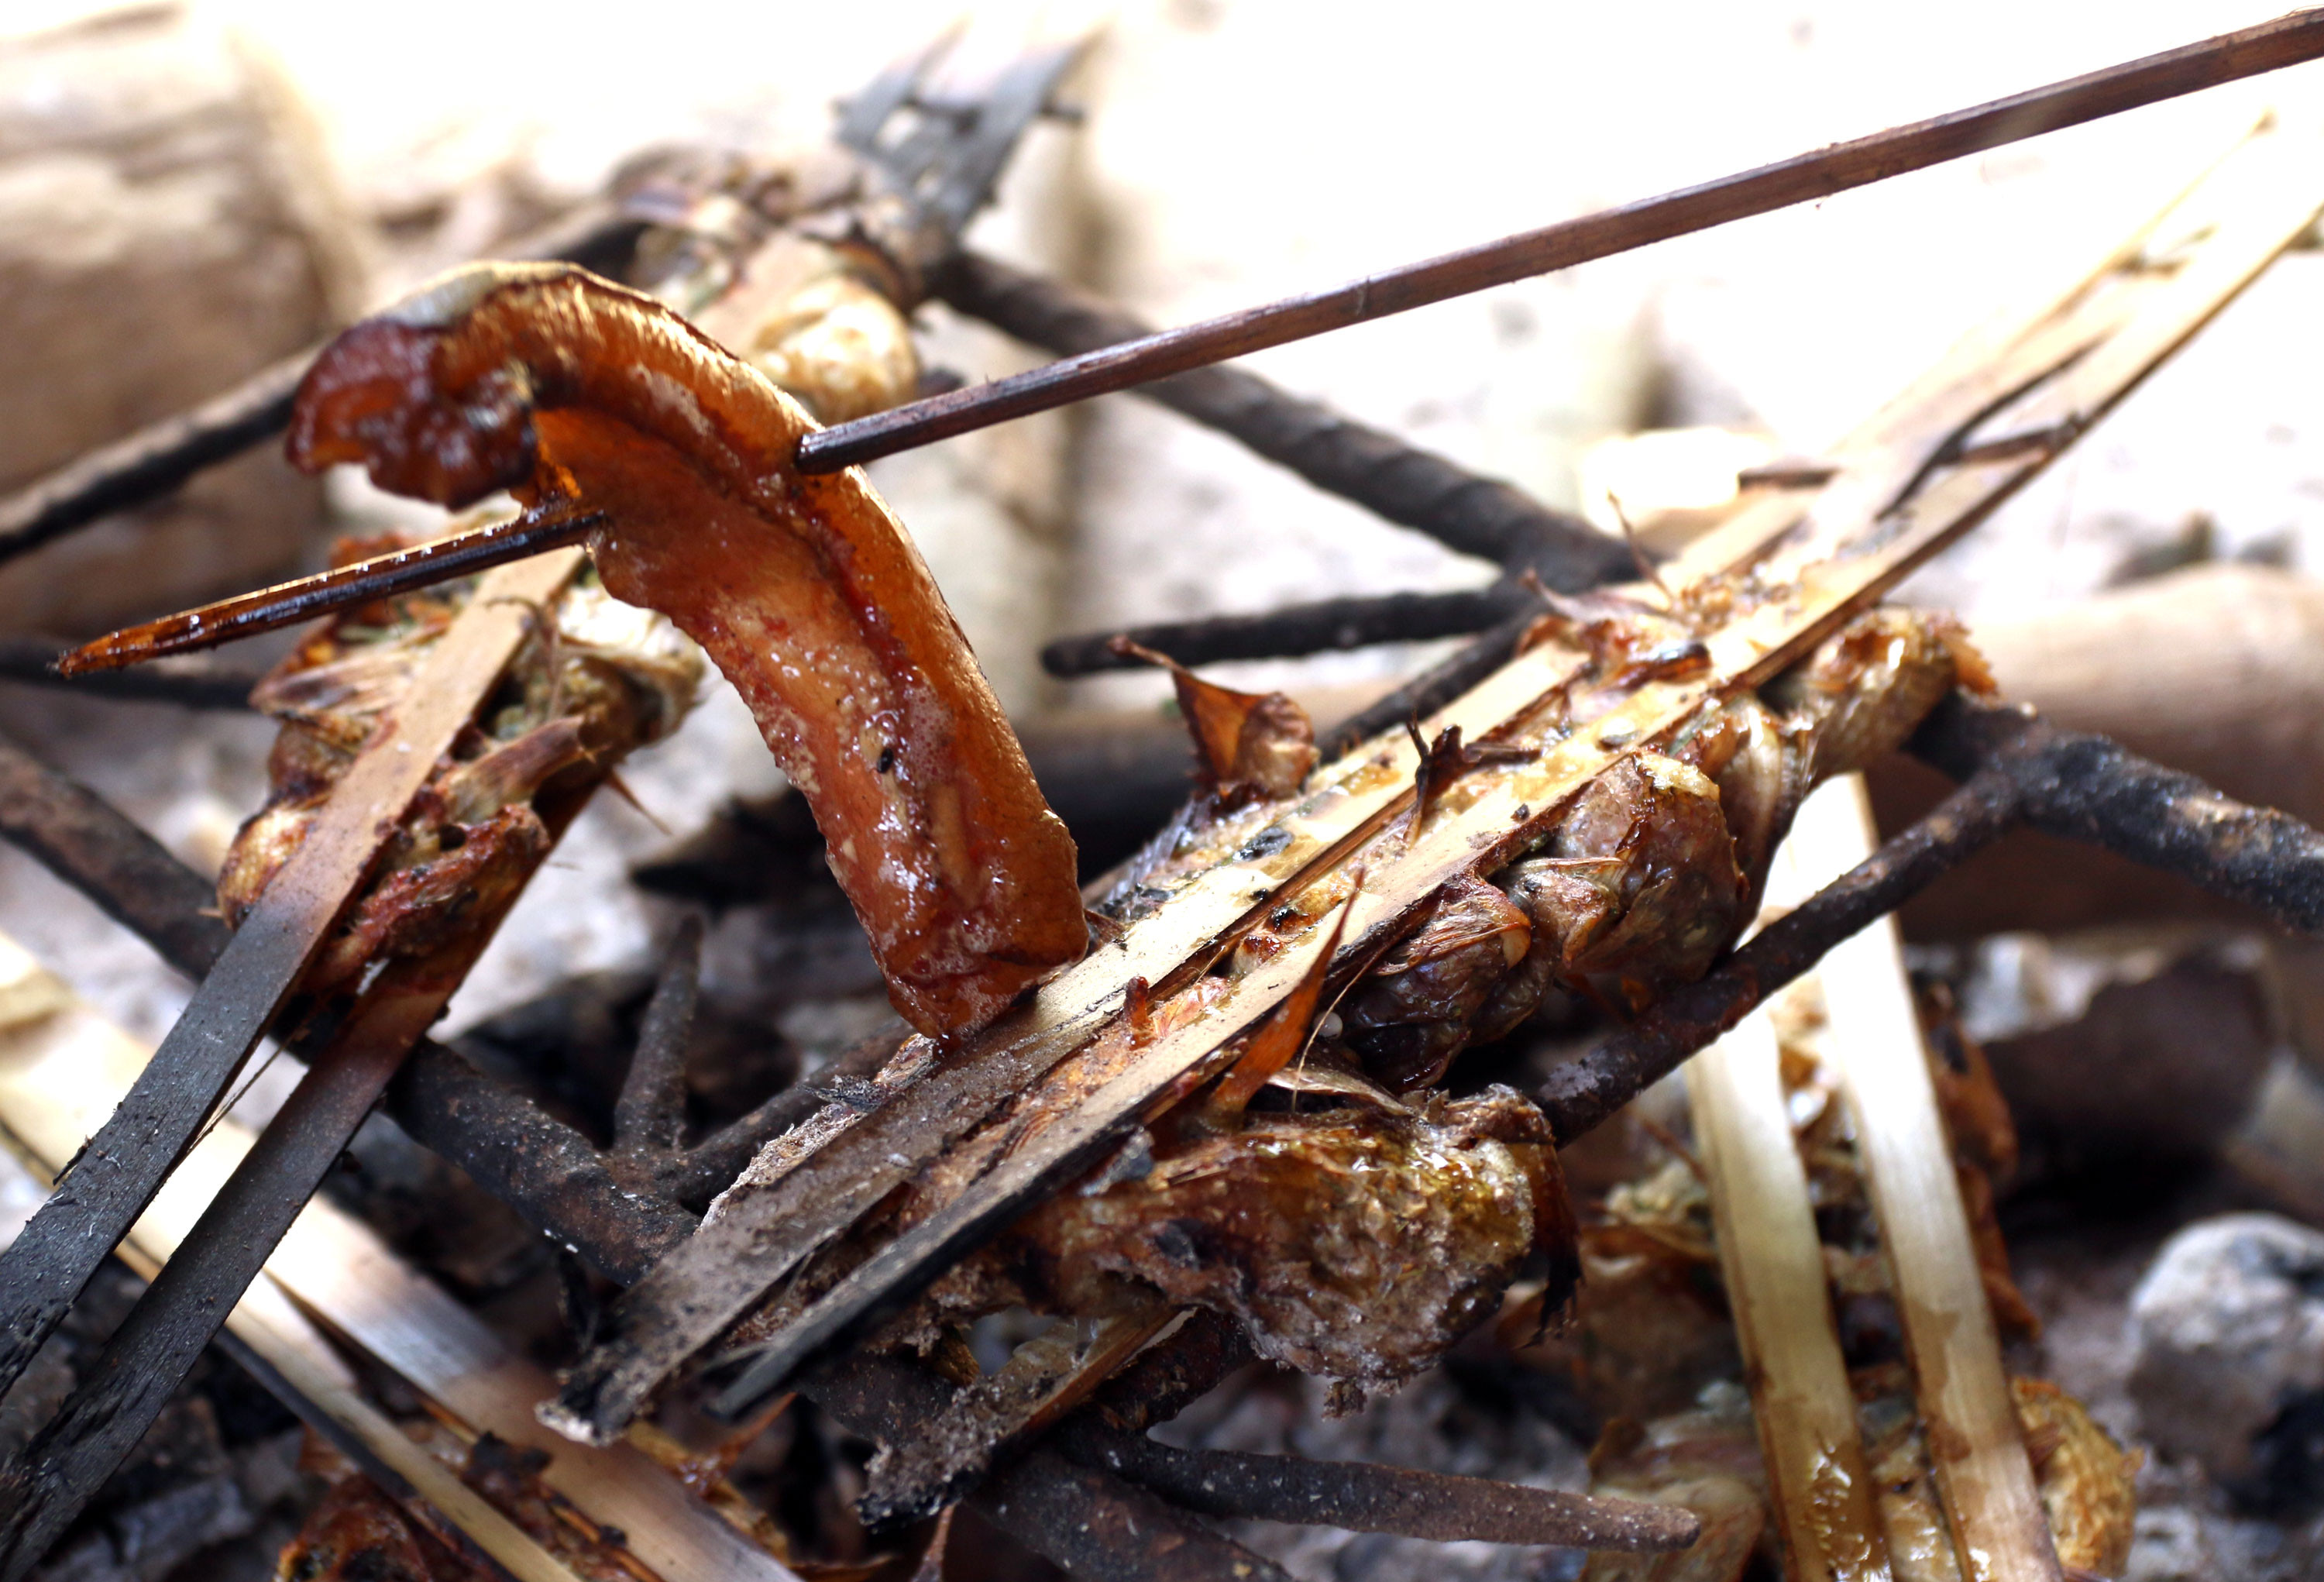 Muốn cá không khô và thơm hơn, người dân vùng cao Nghệ An sử dụng mỡ lợn nướng cho chảy mỡ ra và quét lên cá. Ảnh: Đào Thọ